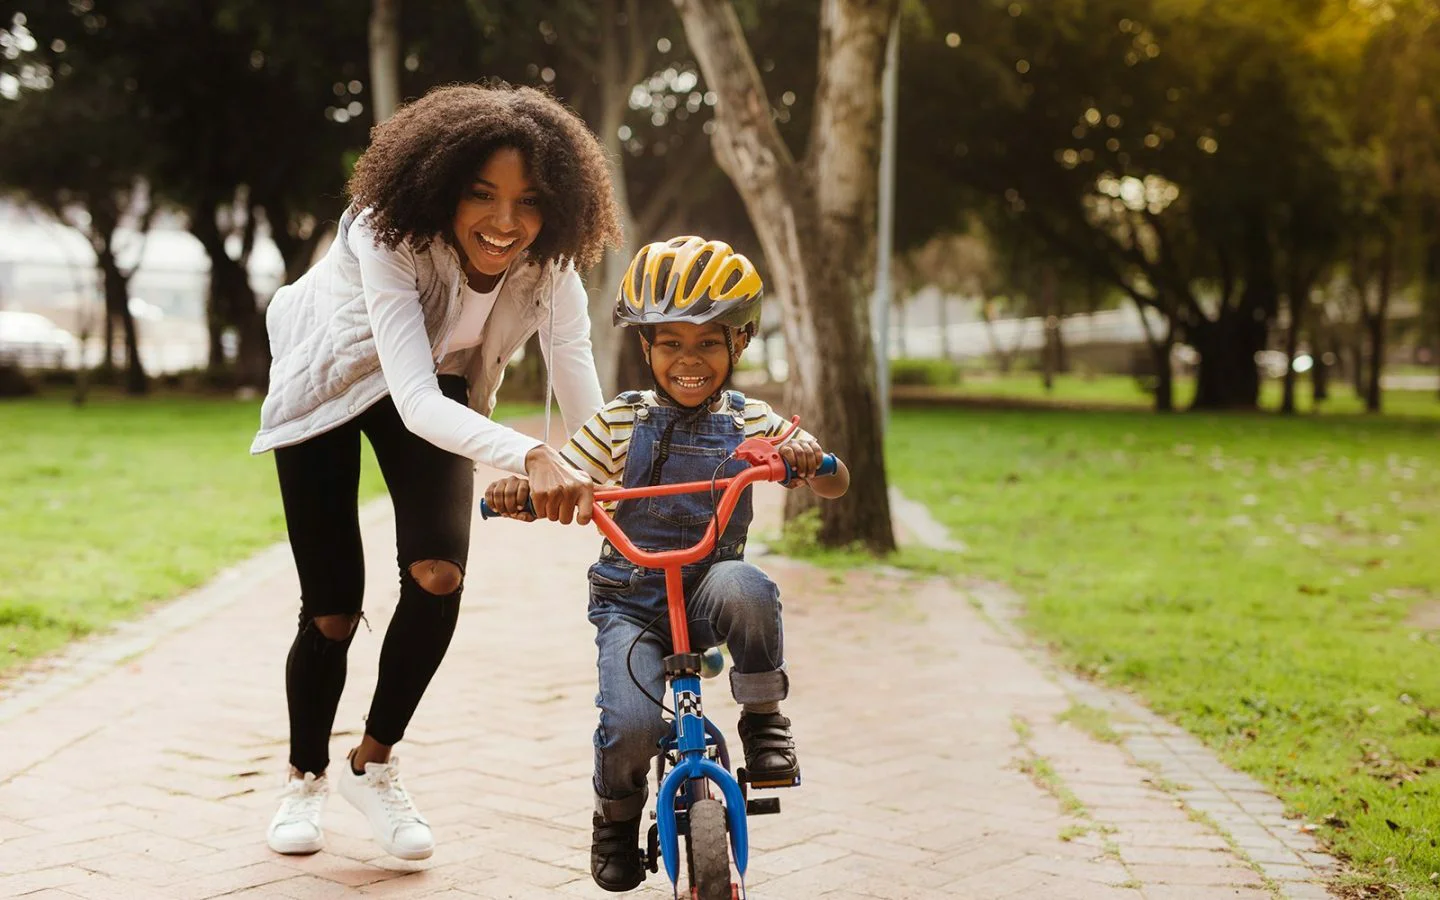 Grazen Labe Koloniaal De voordelen van fietsen voor kinderen – SIROKO CYCLING COMMUNITY